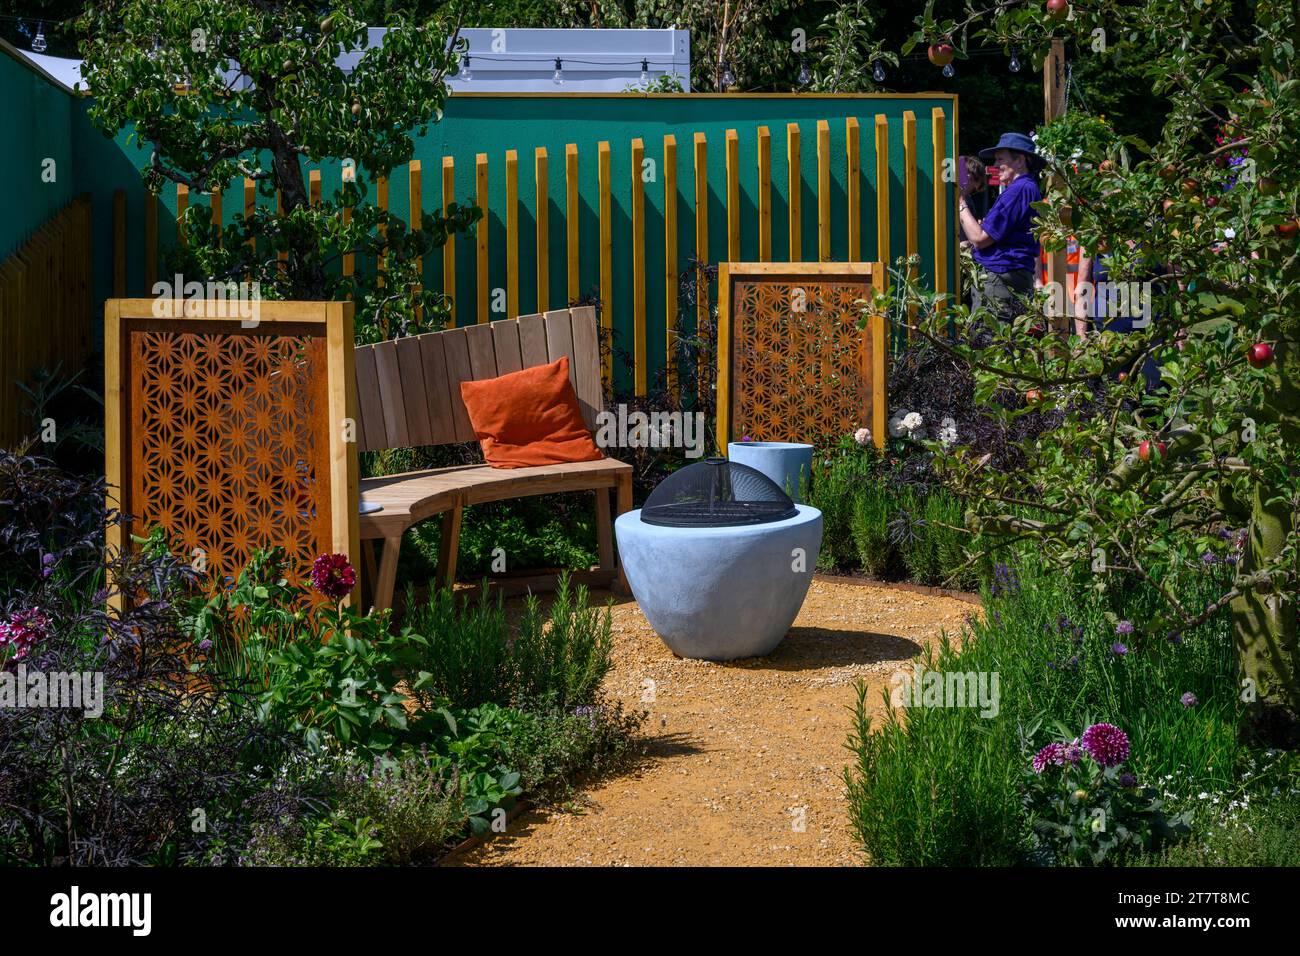 Eintritt zum Empowerment Garden Competition (kleine Terrasse, Blumen, Kräuter & Essbares) - rechts rechts Tatton Park Flower Show 2023, Cheshire, England, Großbritannien. Stockfoto